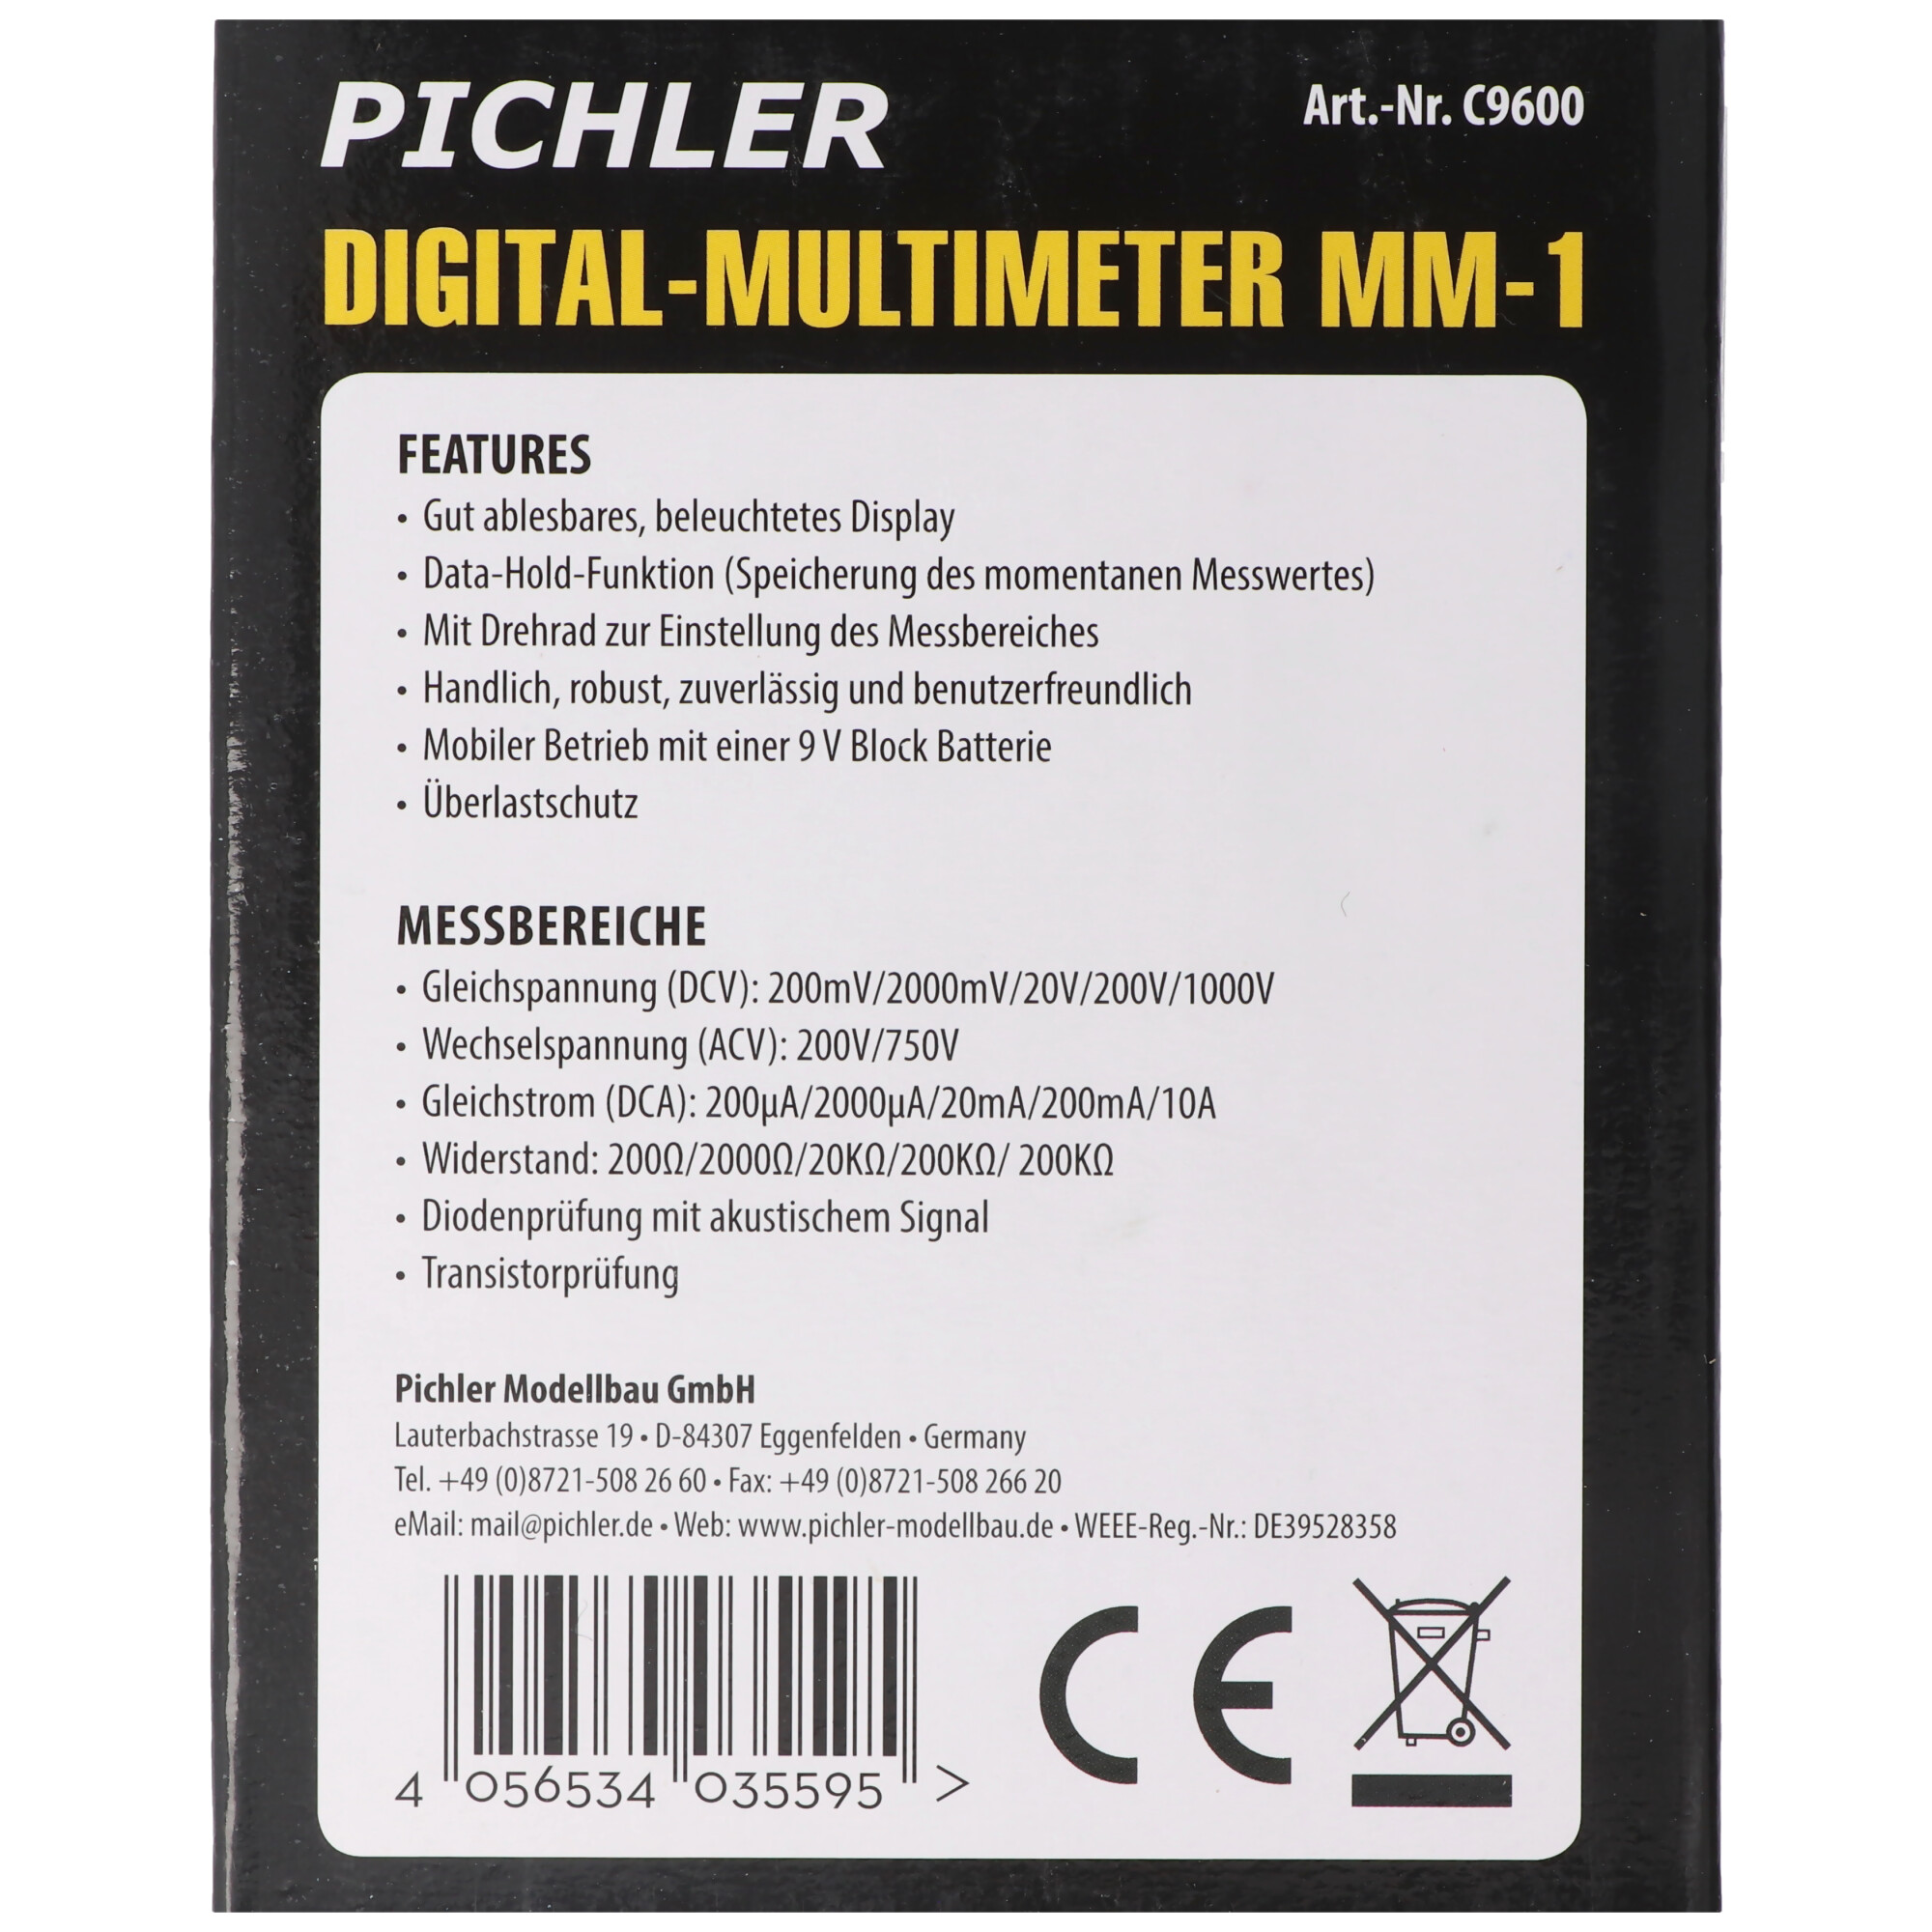 Digital Multimeter MM-1, beleuchtetes Display, ideal für Modellbau, Hobby, Werkstatt, Haushalt